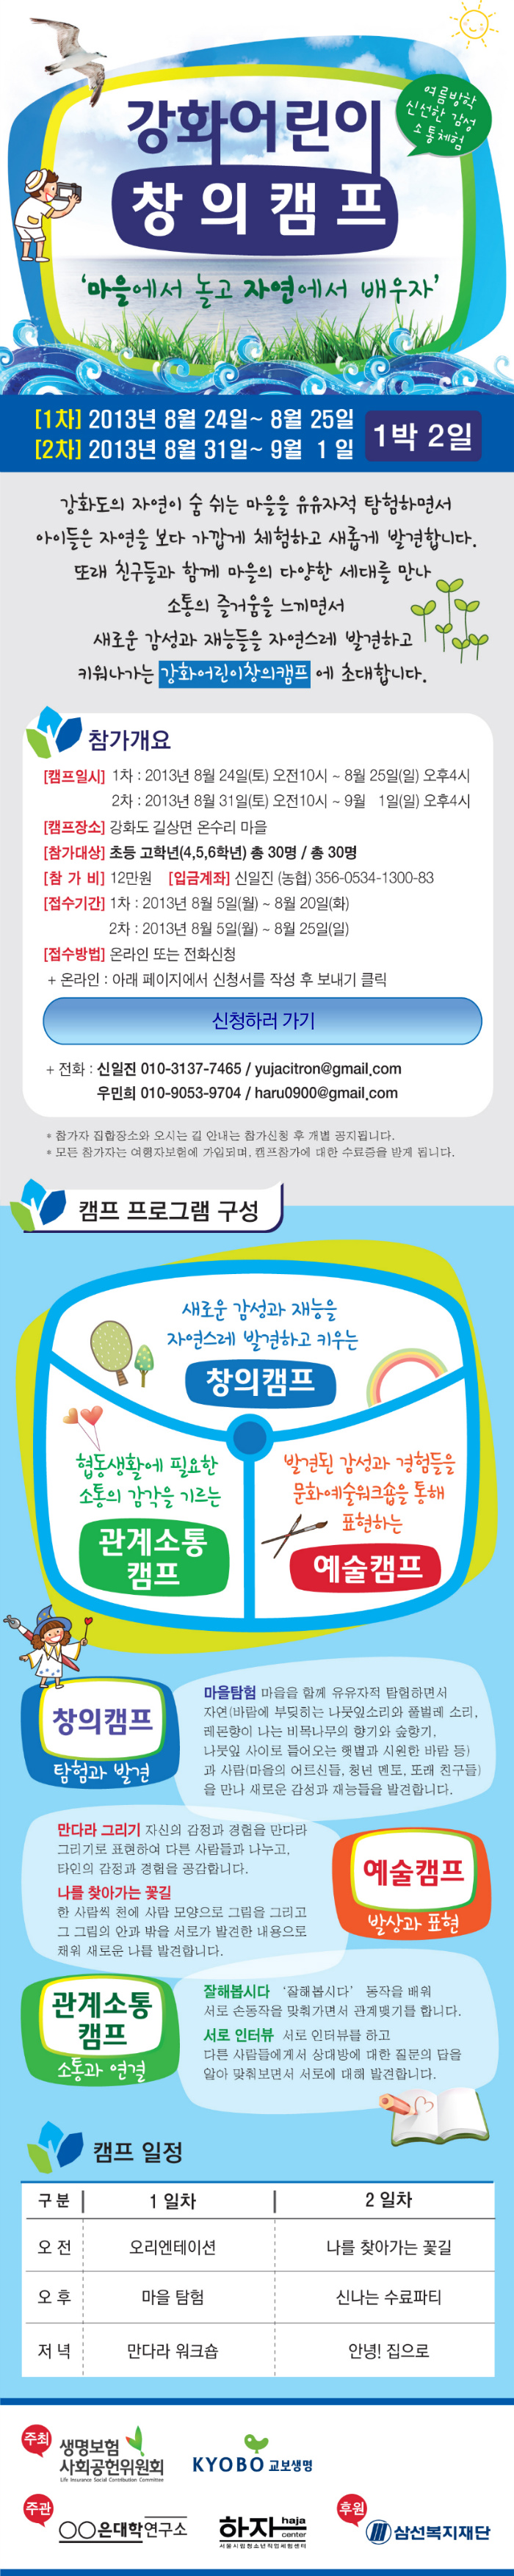 강화여름캠프2013_웹용_최종.jpg